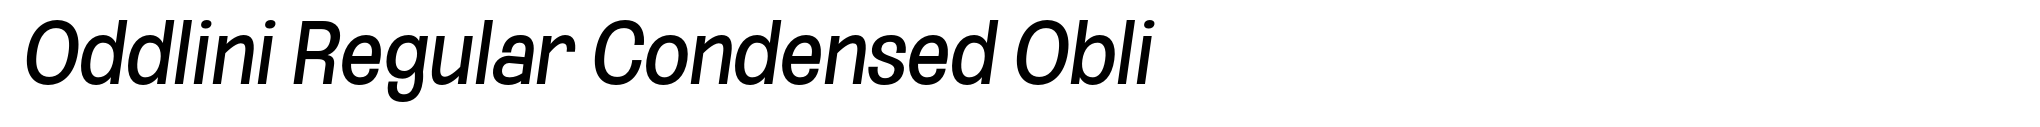 Oddlini Regular Condensed Obli image